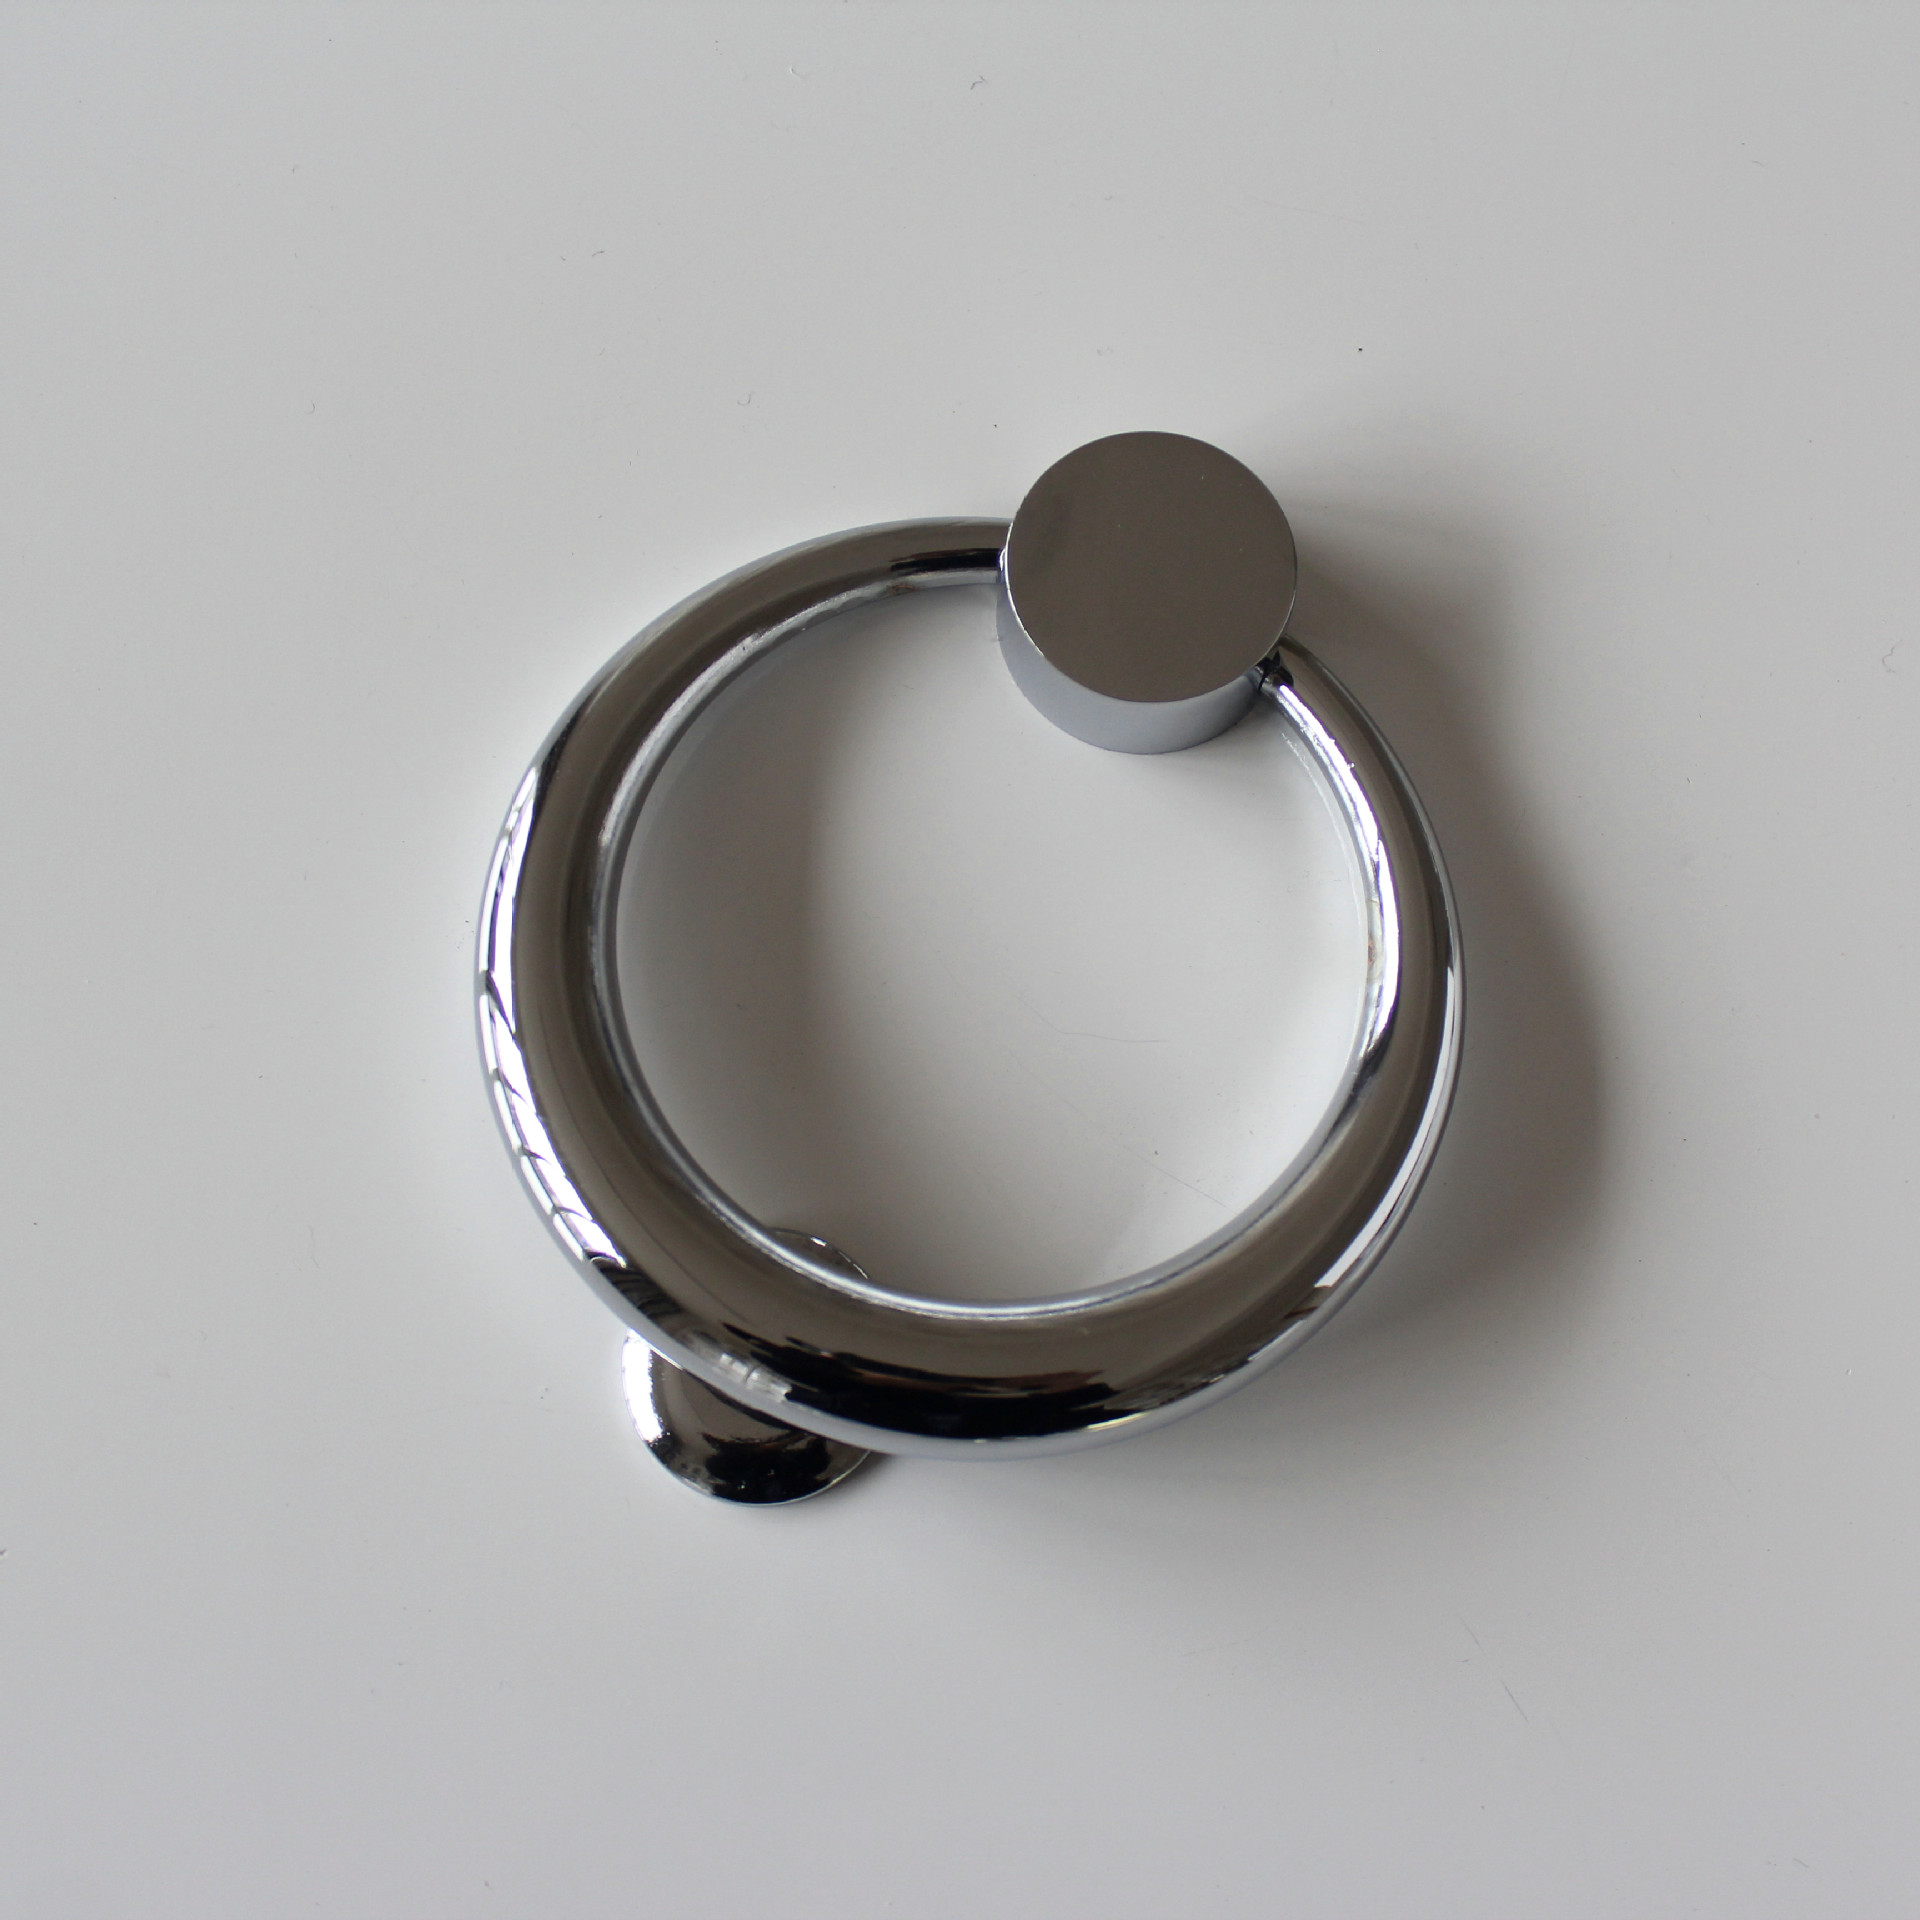 Jd zink legering ring knocker moderne minimalistisk dør sikkerhed grøn bronze dør banke møbler håndtag hardware: Krom